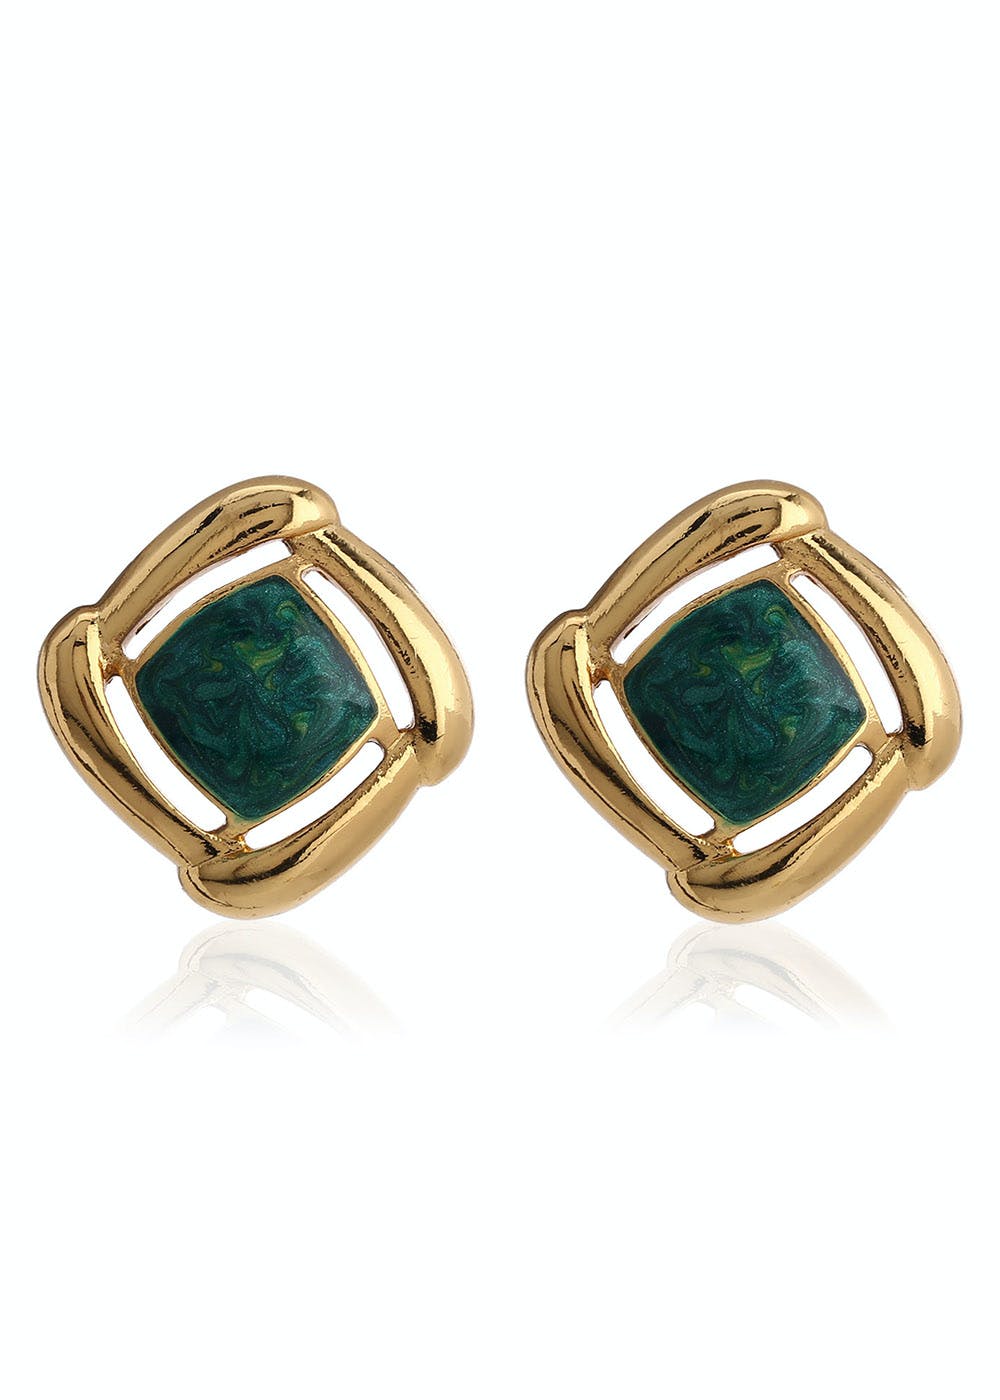 Beautiful Emerald Gold Jhumka Earrings